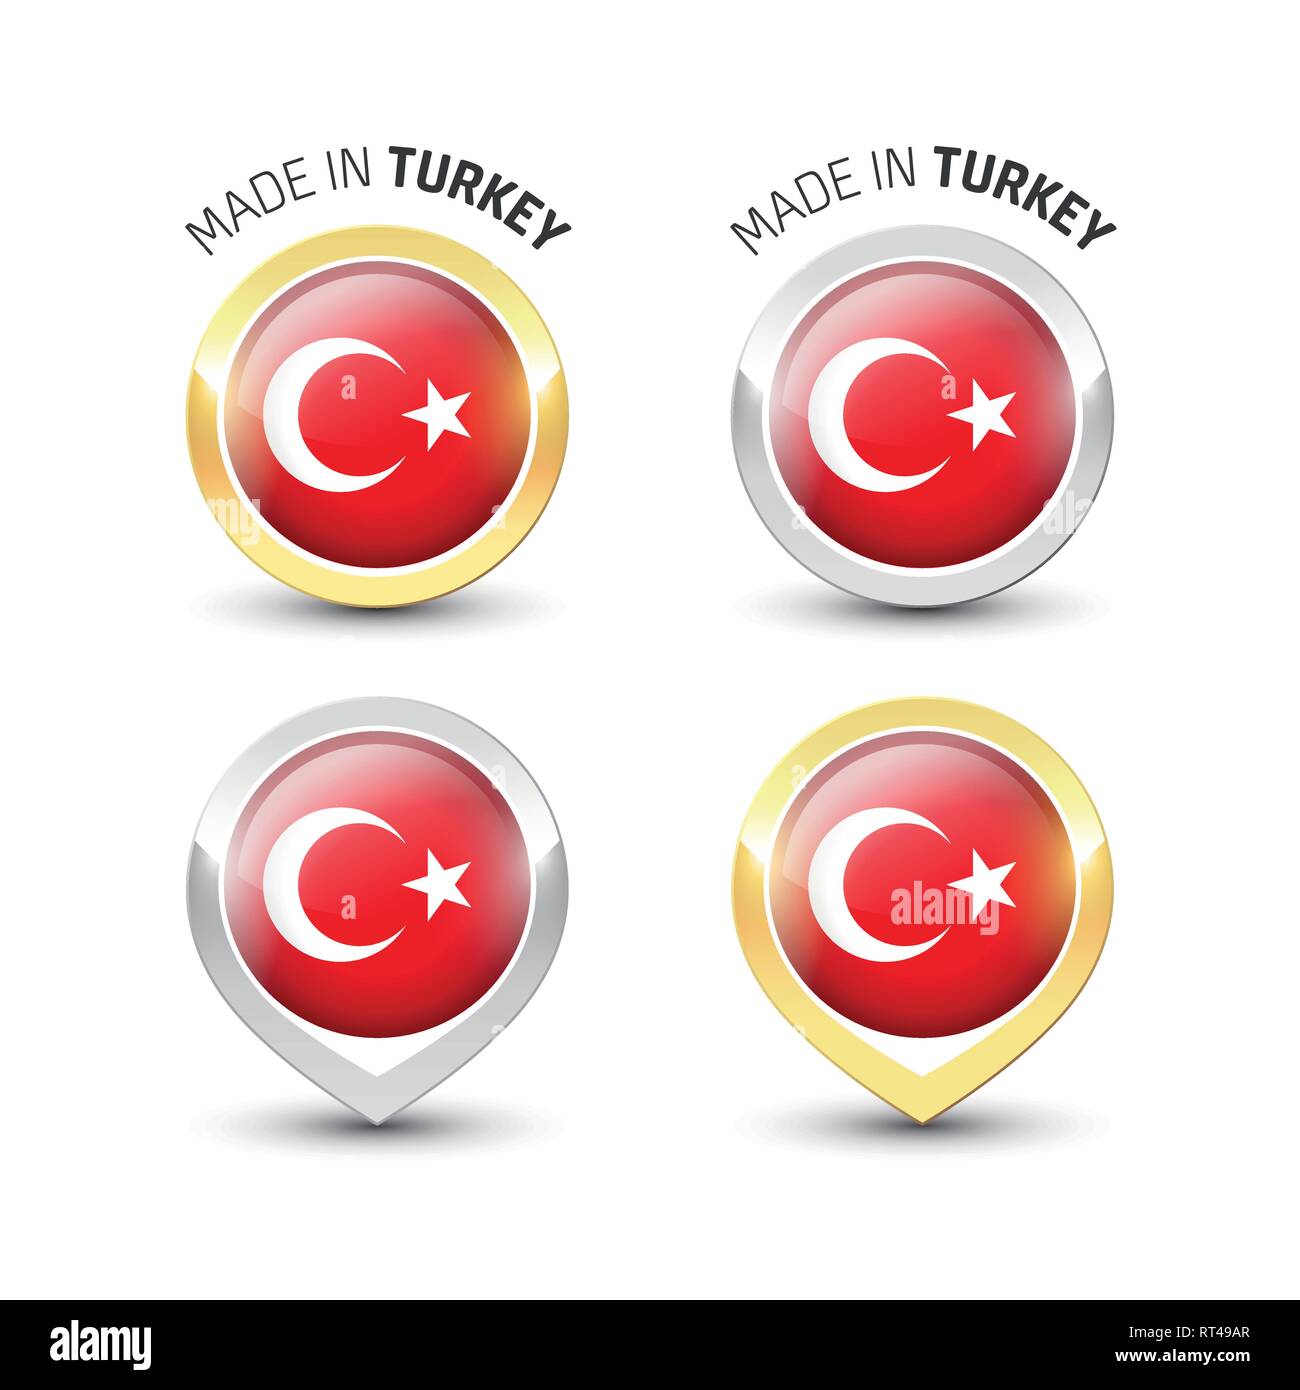 Realizzati in Turchia - etichetta di garanzia con bandiera turca all'interno del turno oro e argento icone. Illustrazione Vettoriale